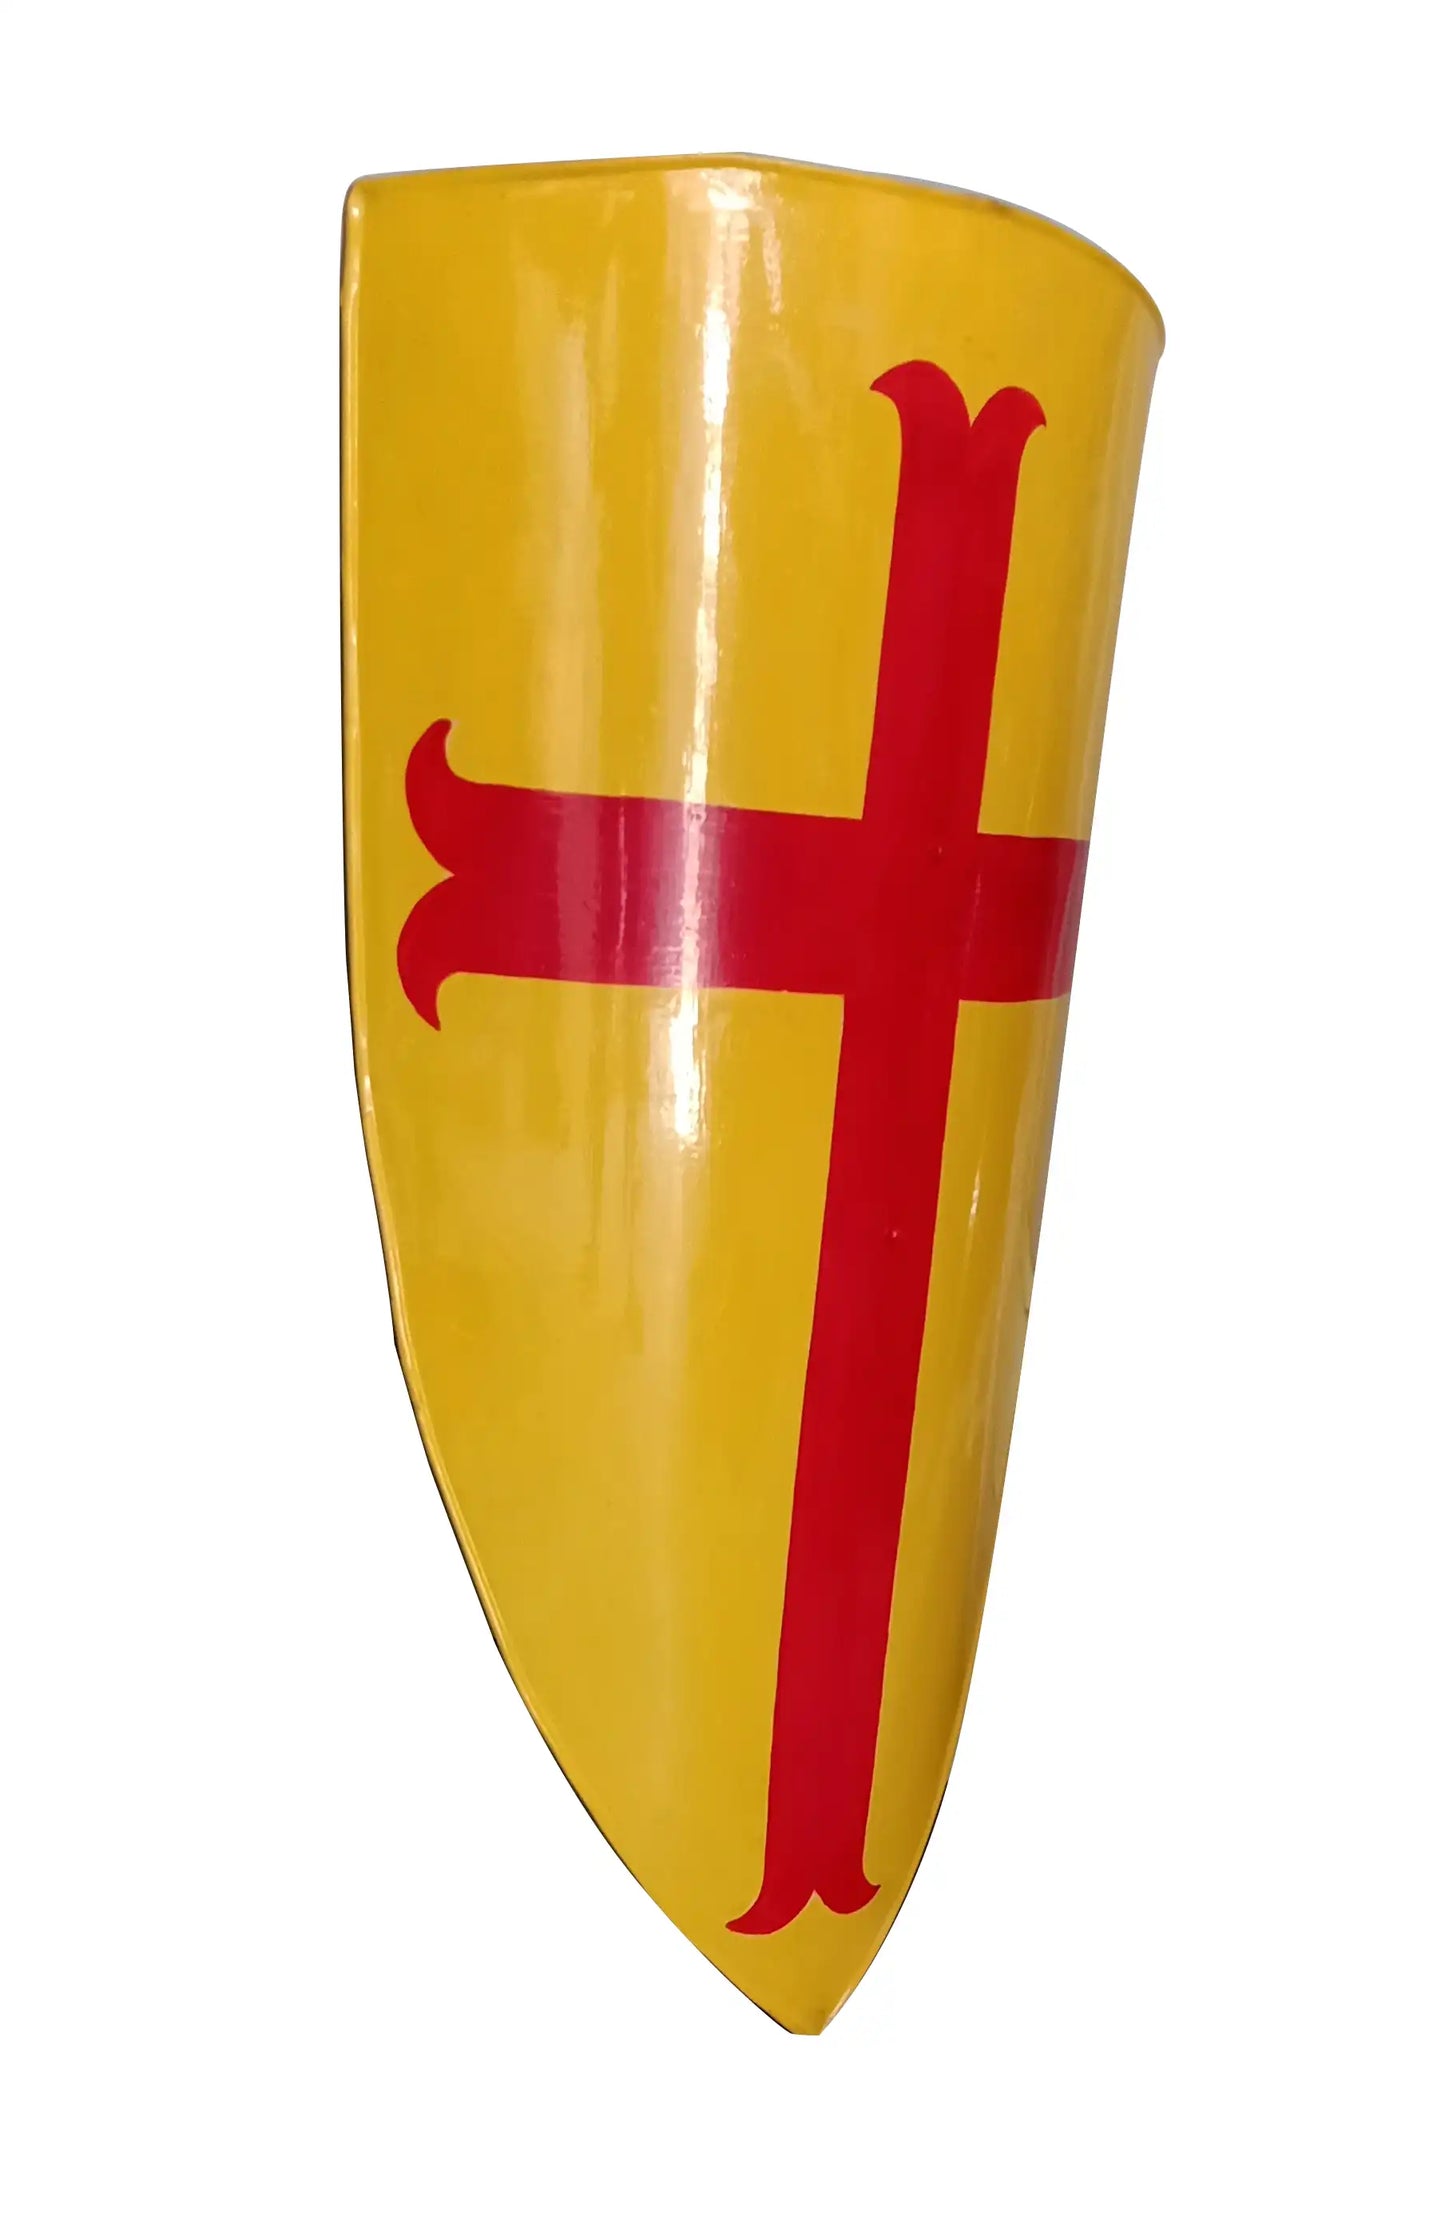 Escudo de caballero templario amarillo cruzado de la Cruz Roja medieval 